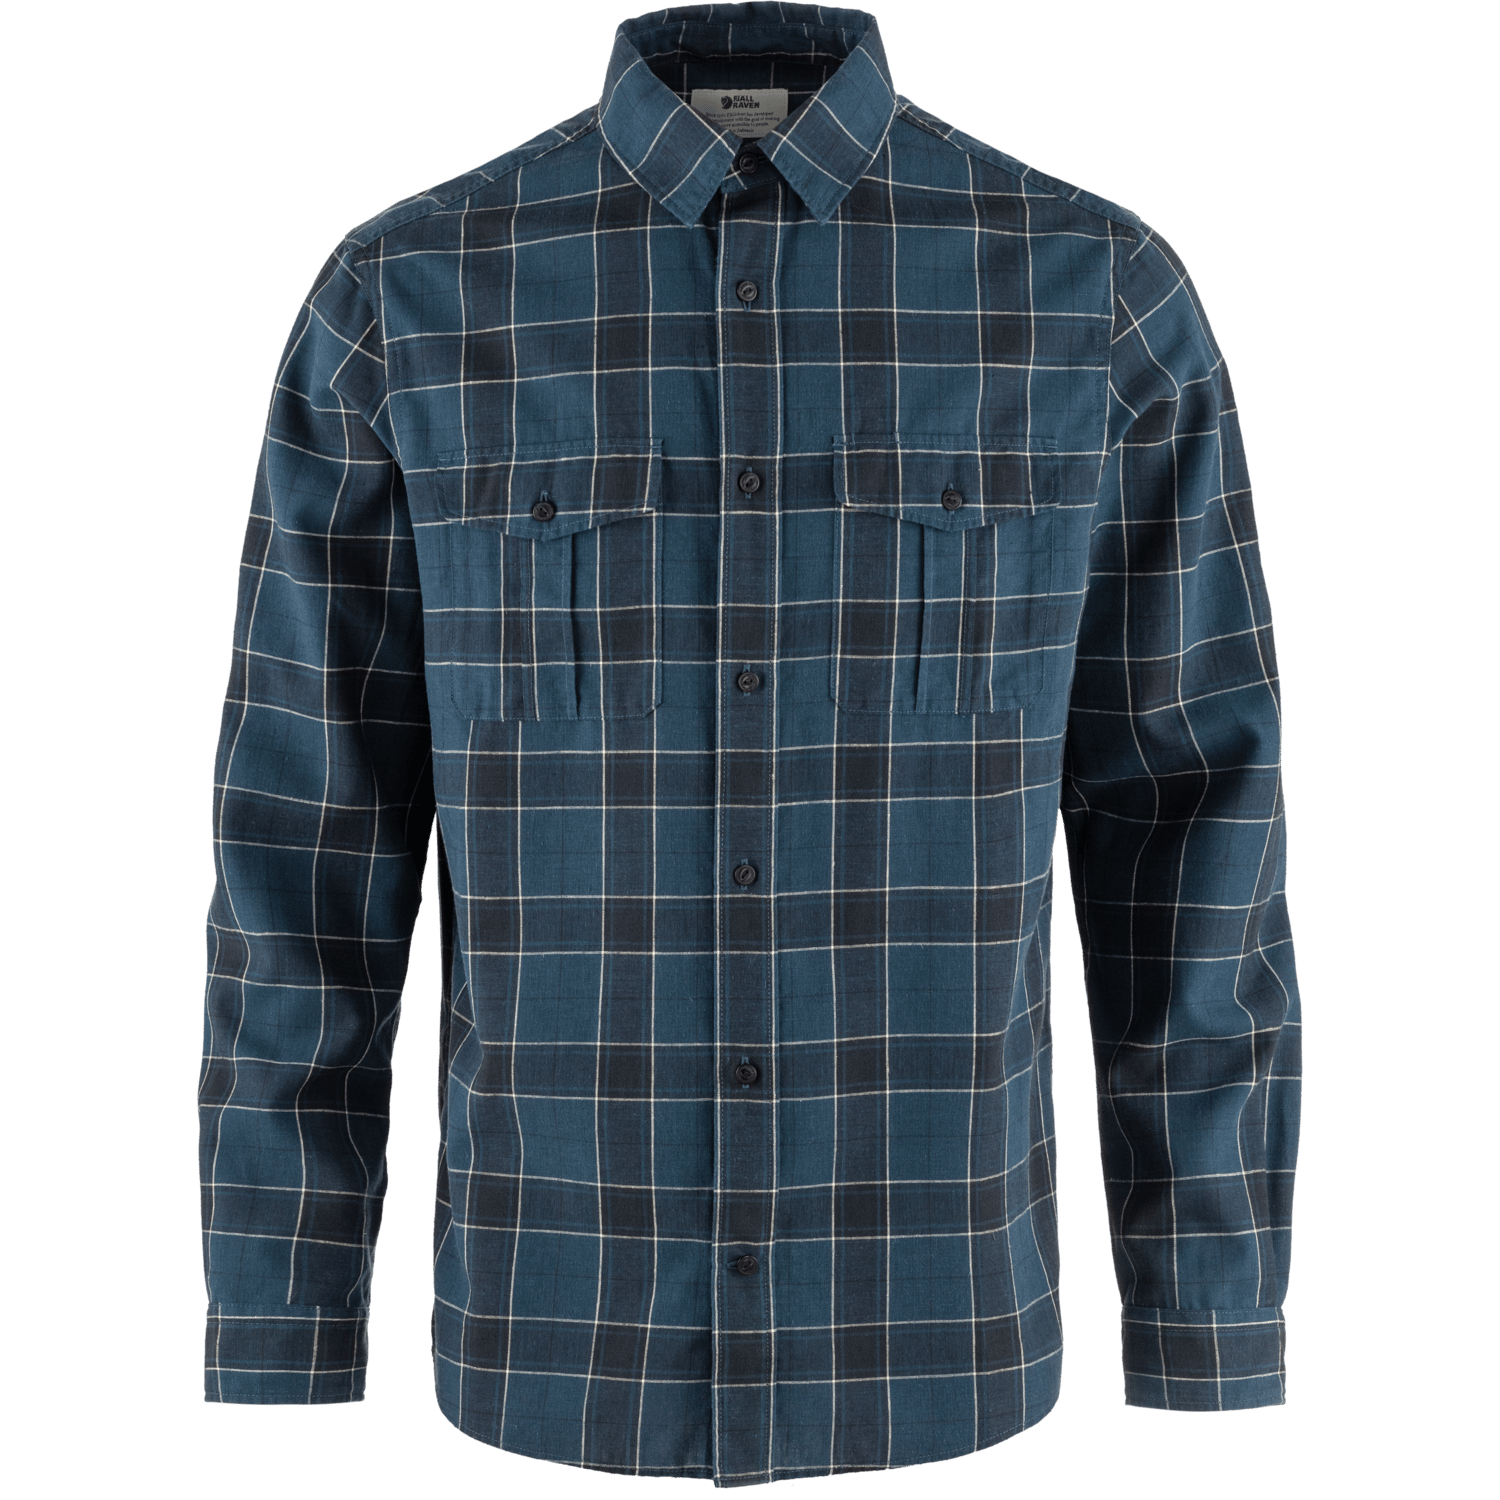 Fjällräven Men's Övik Travel Long Sleeved Shirt Indigo Blue-Dark Navy